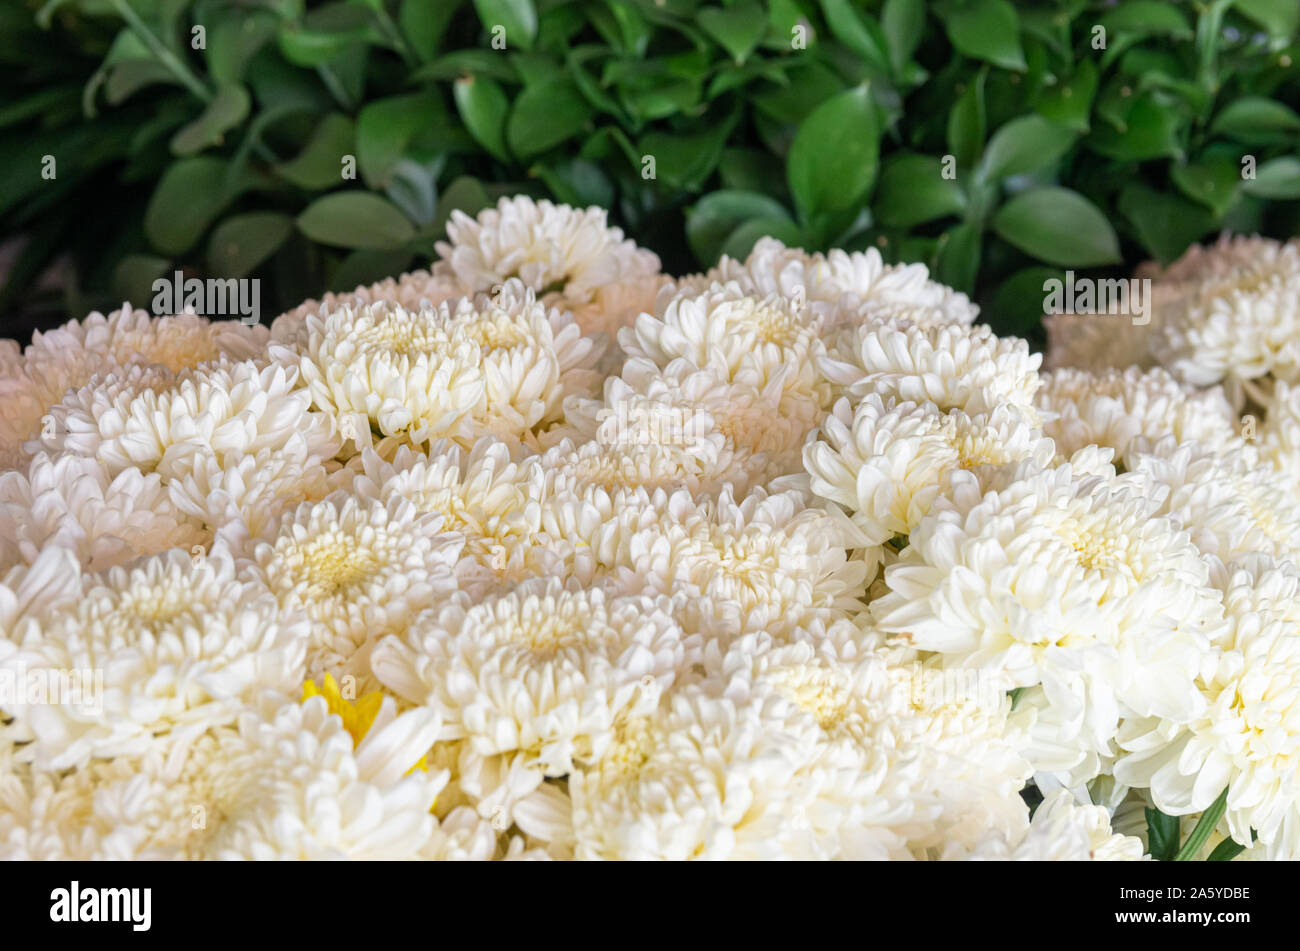 Bündel weißer Florist's Daisy (Chrysanthemum morifolium) grüne Blätter im Hintergrund - ausgewählte Fokus - text Raum Stockfoto